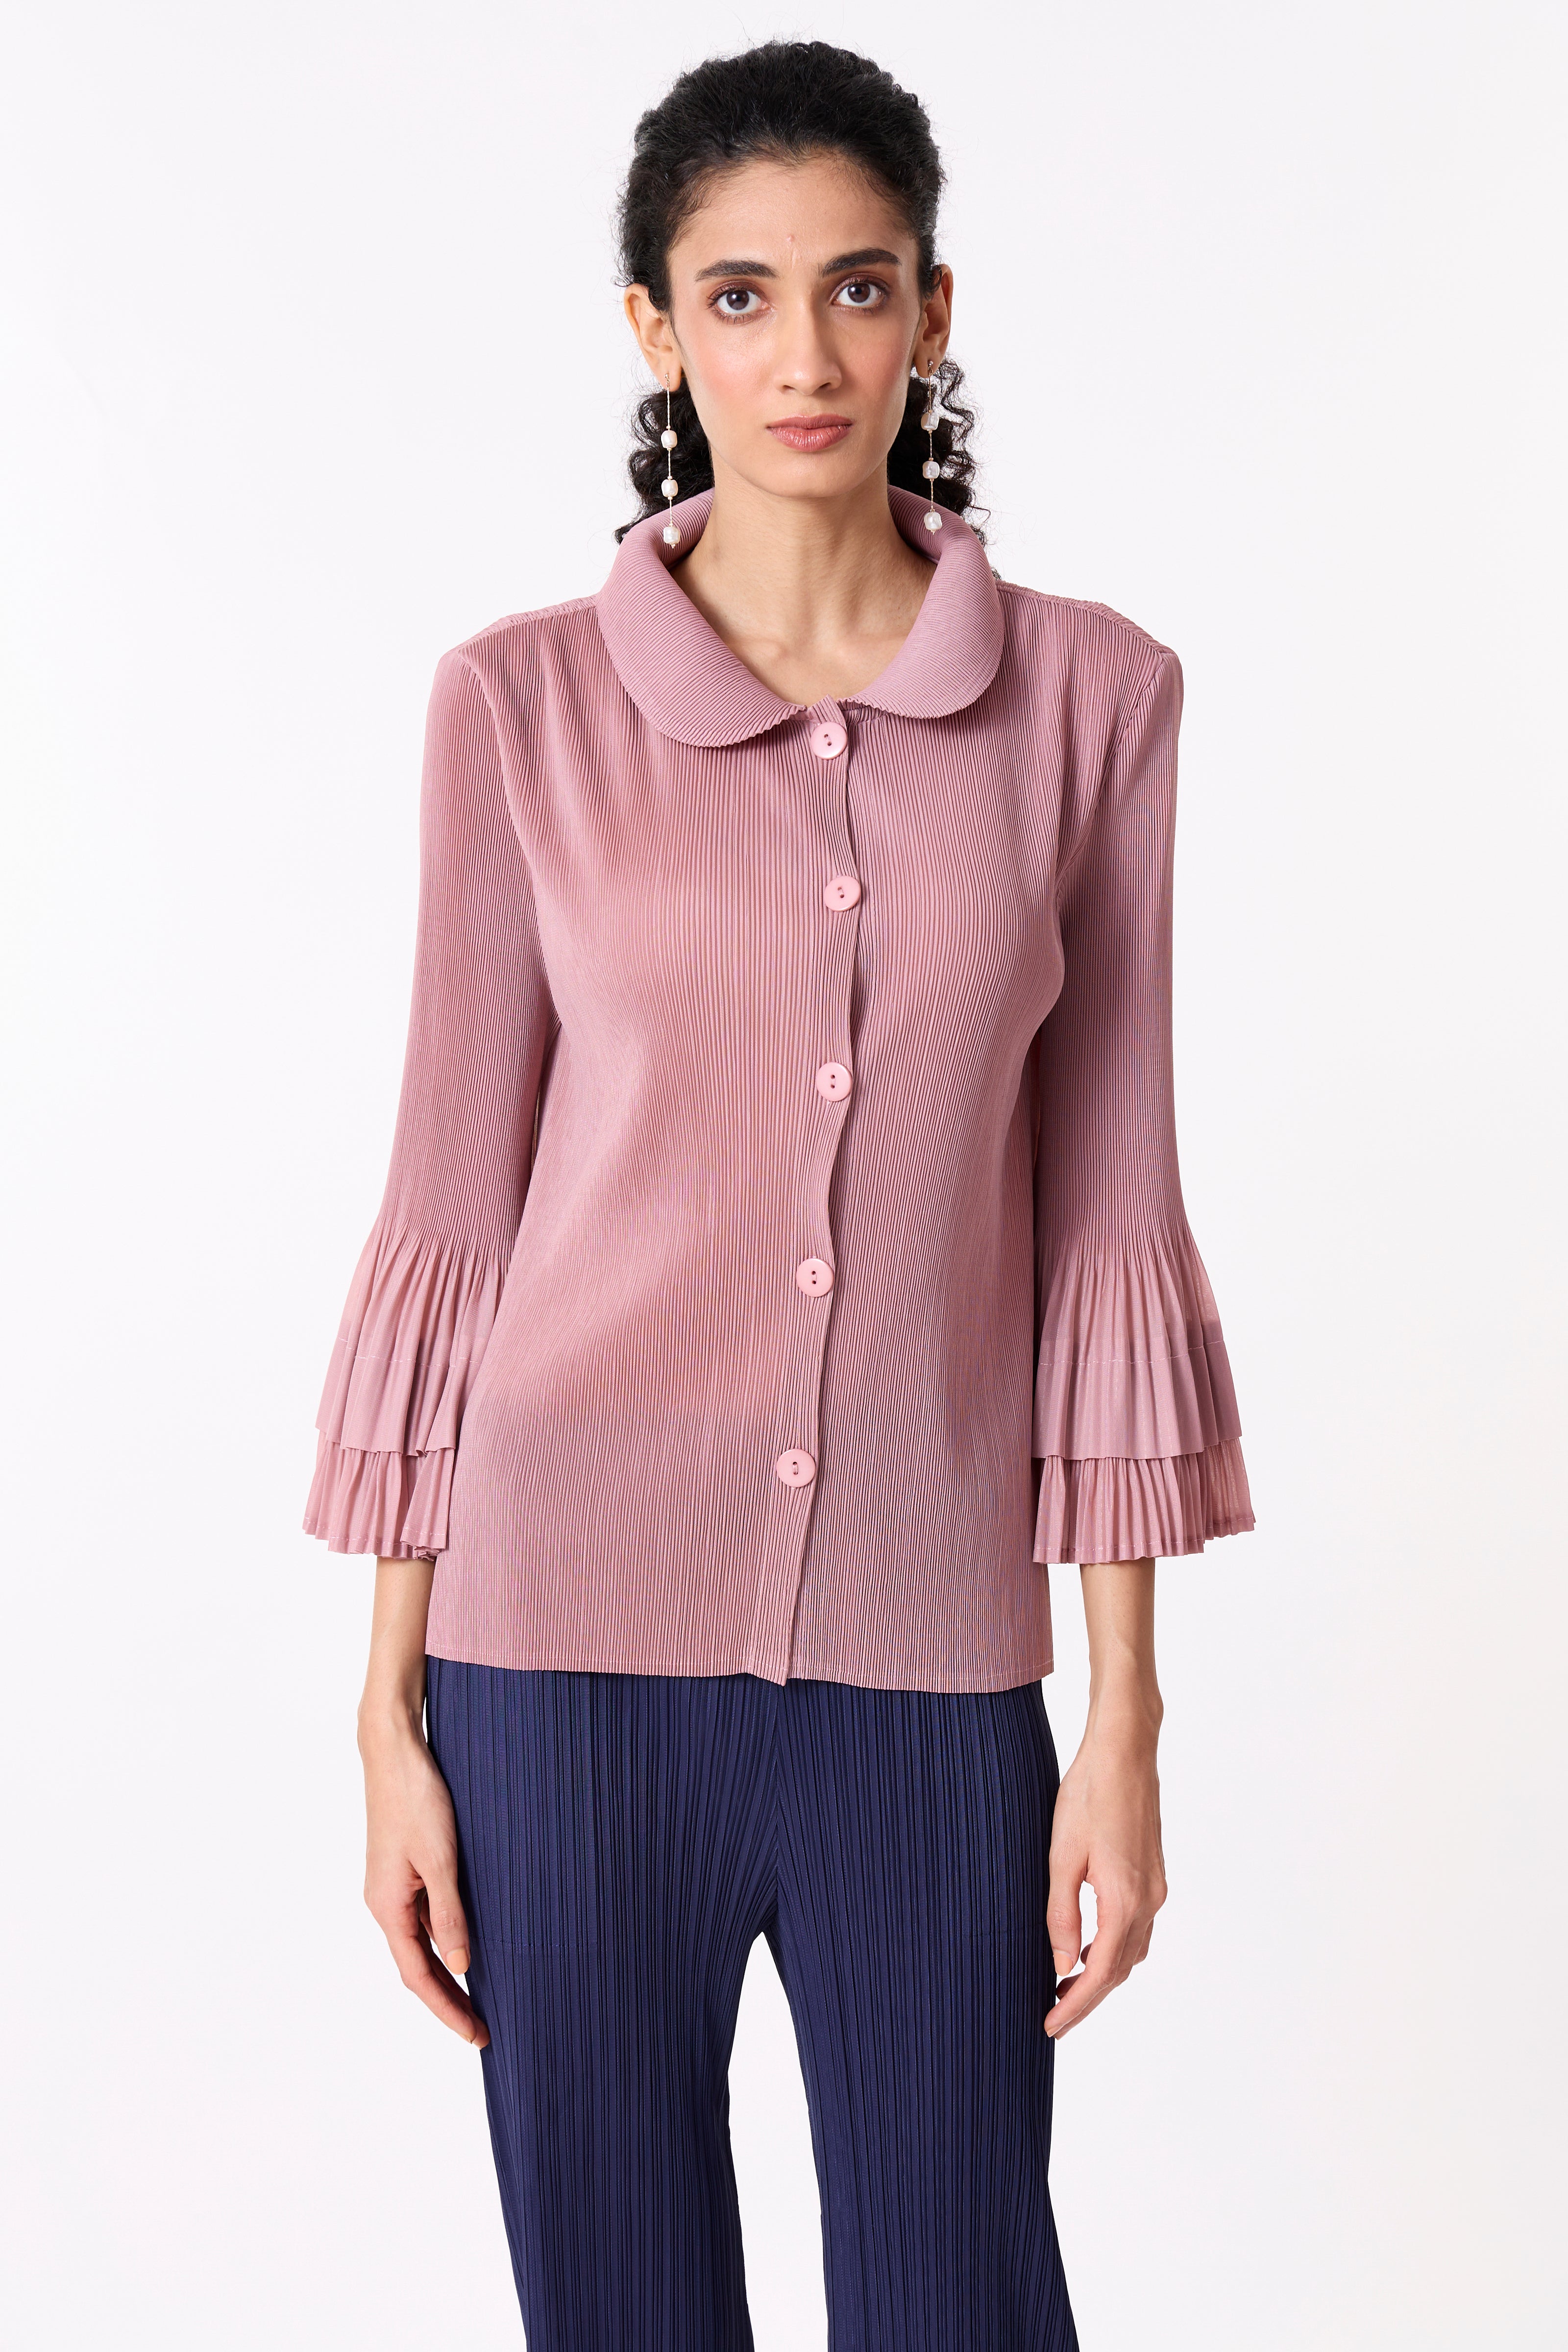 Maise Shirt - Pink